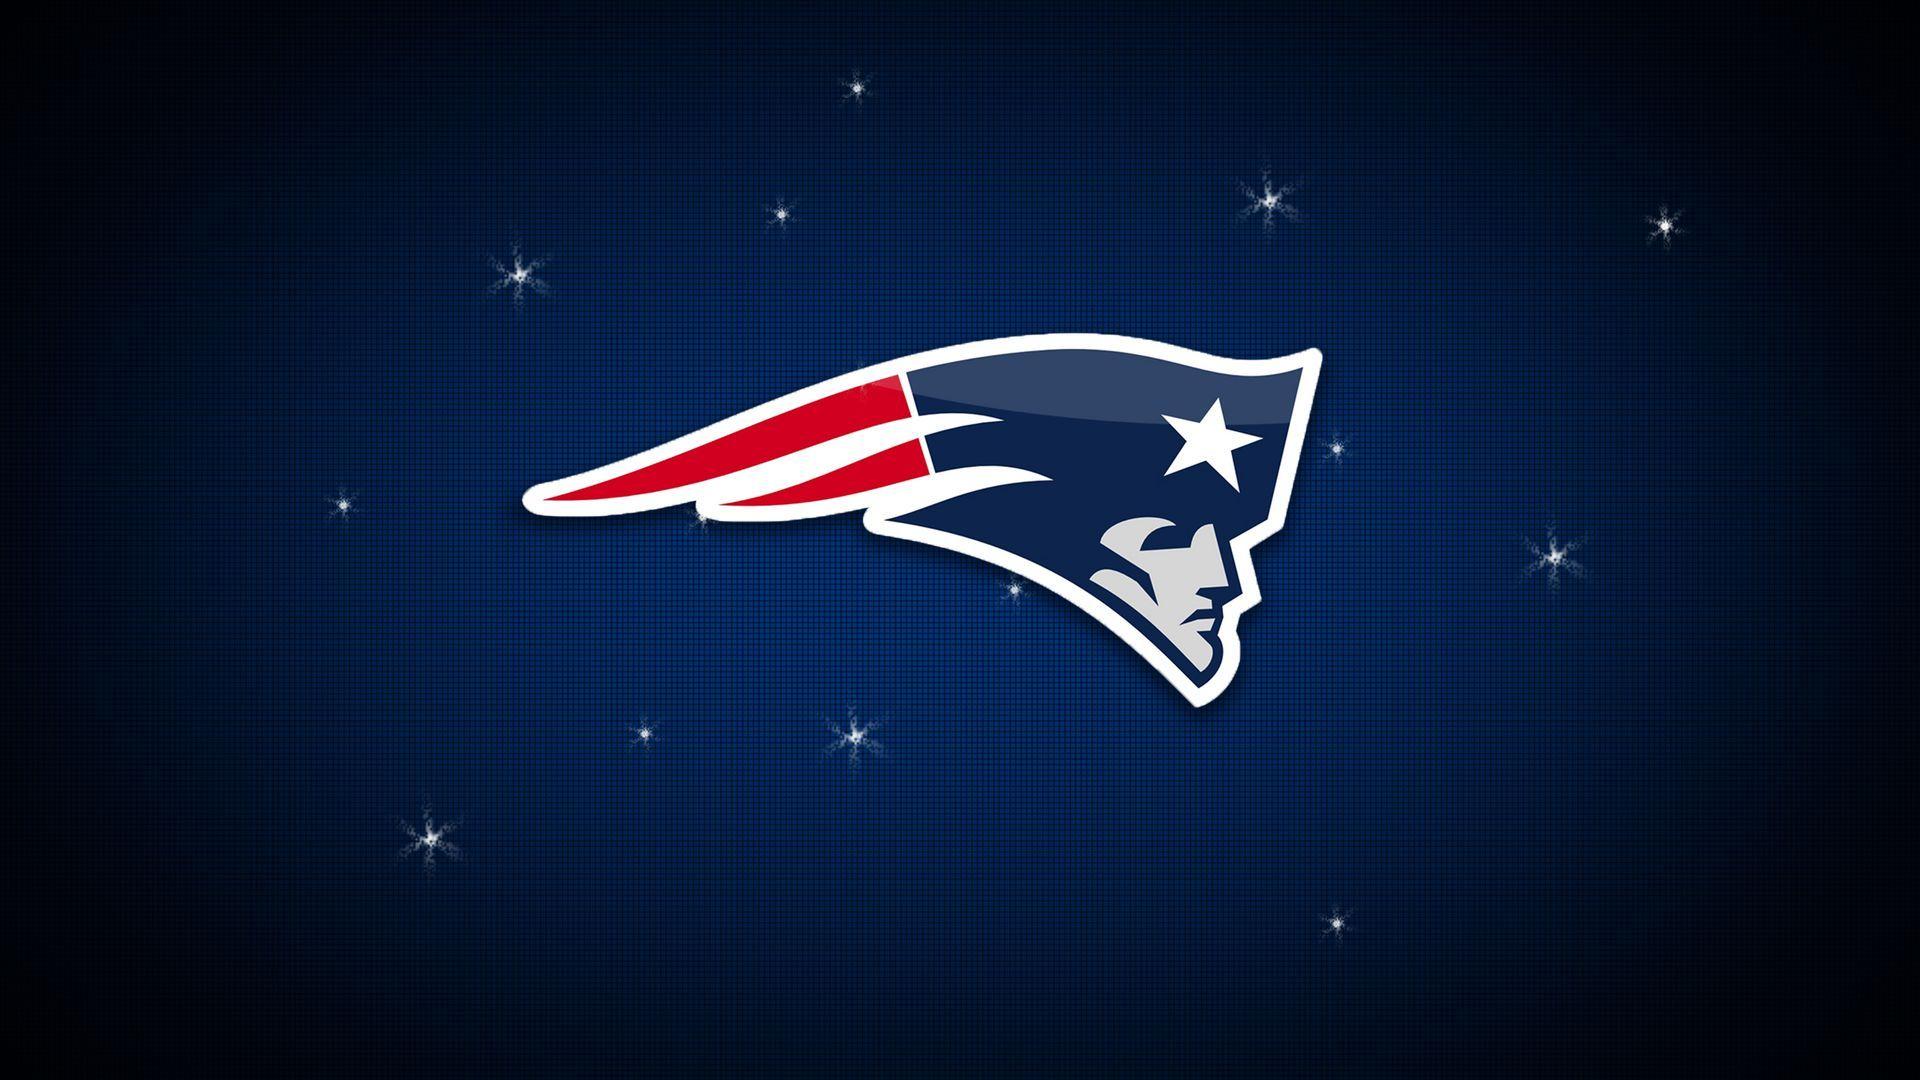 Maroon Football Logo - New England Patriots American Football Team Logo Wallpaper ...